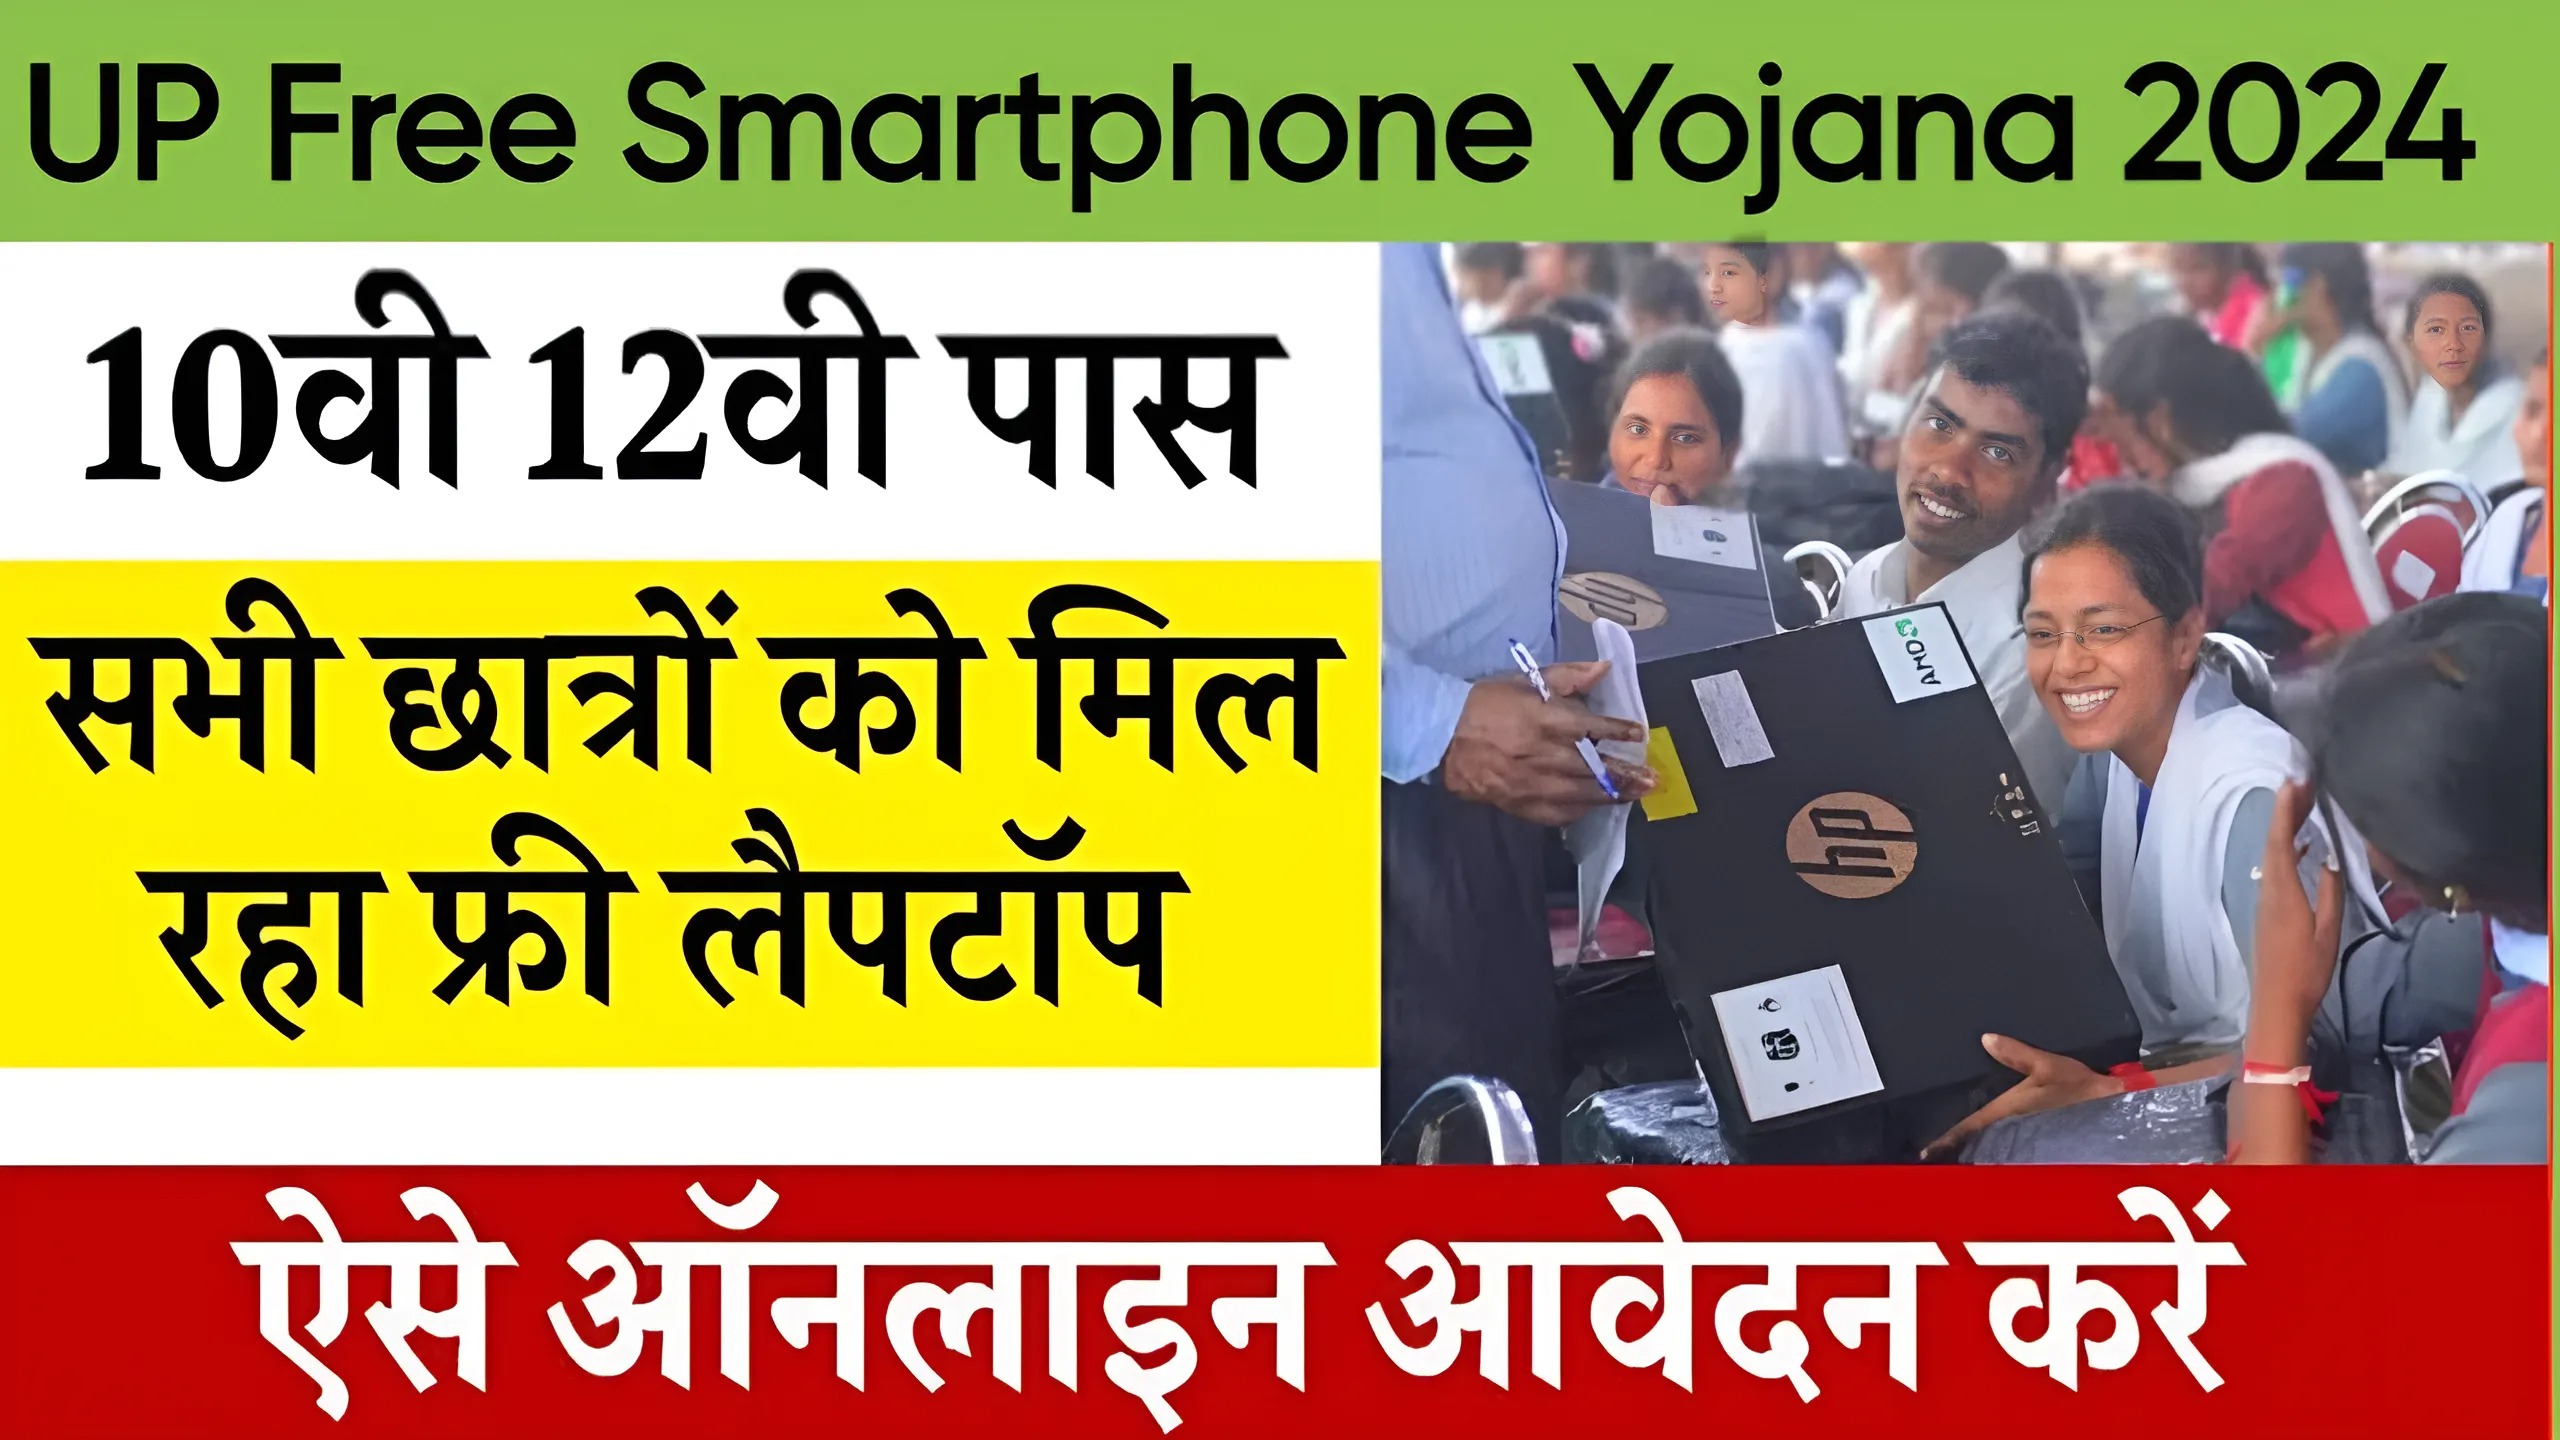 UP Free Smartphone Yojana 2024